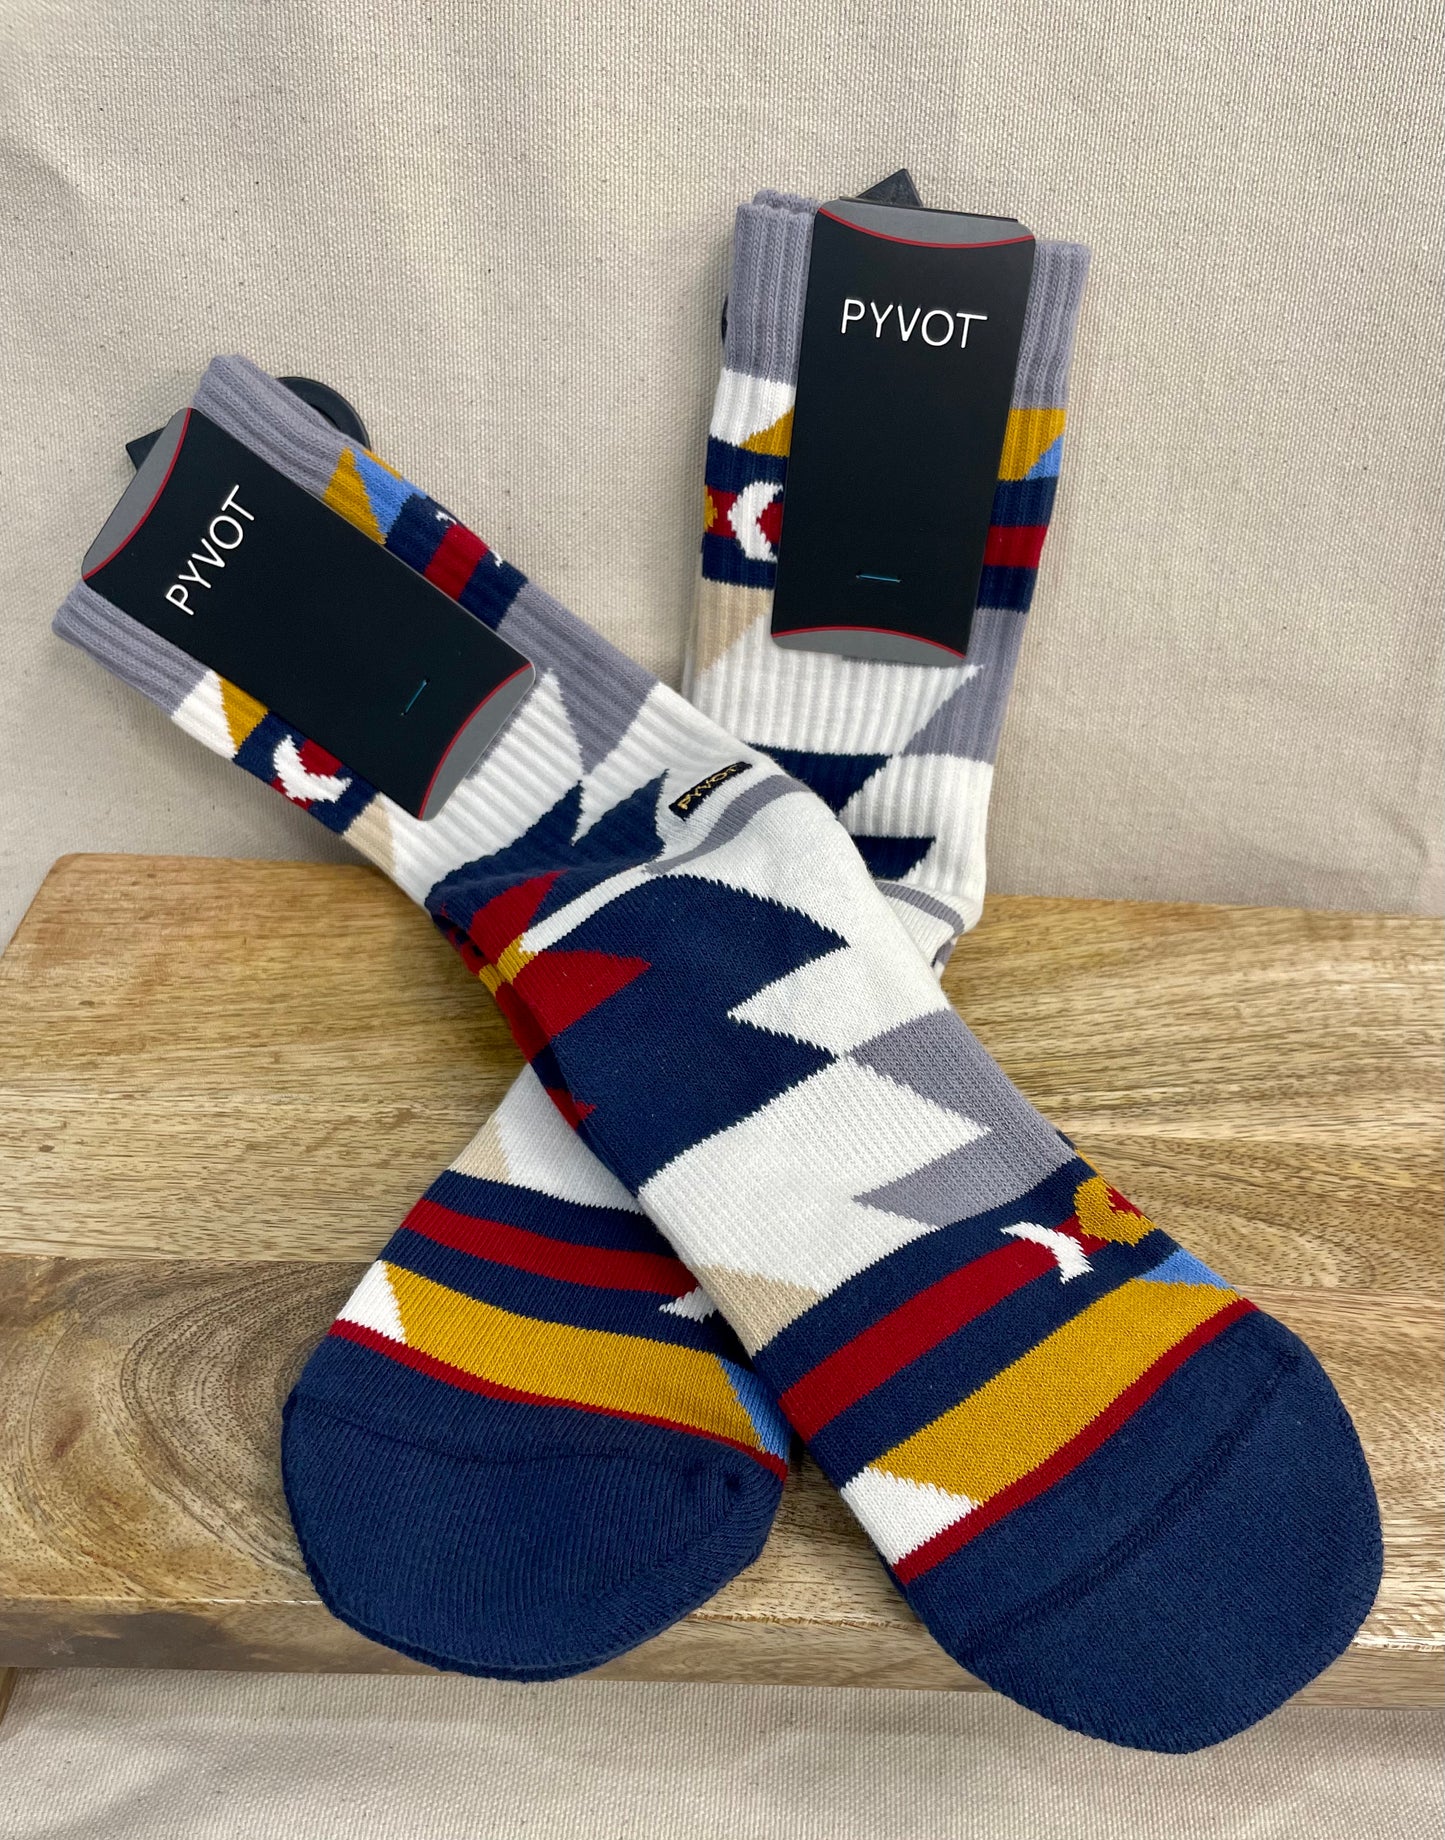 PYVOT Socks - The Collective